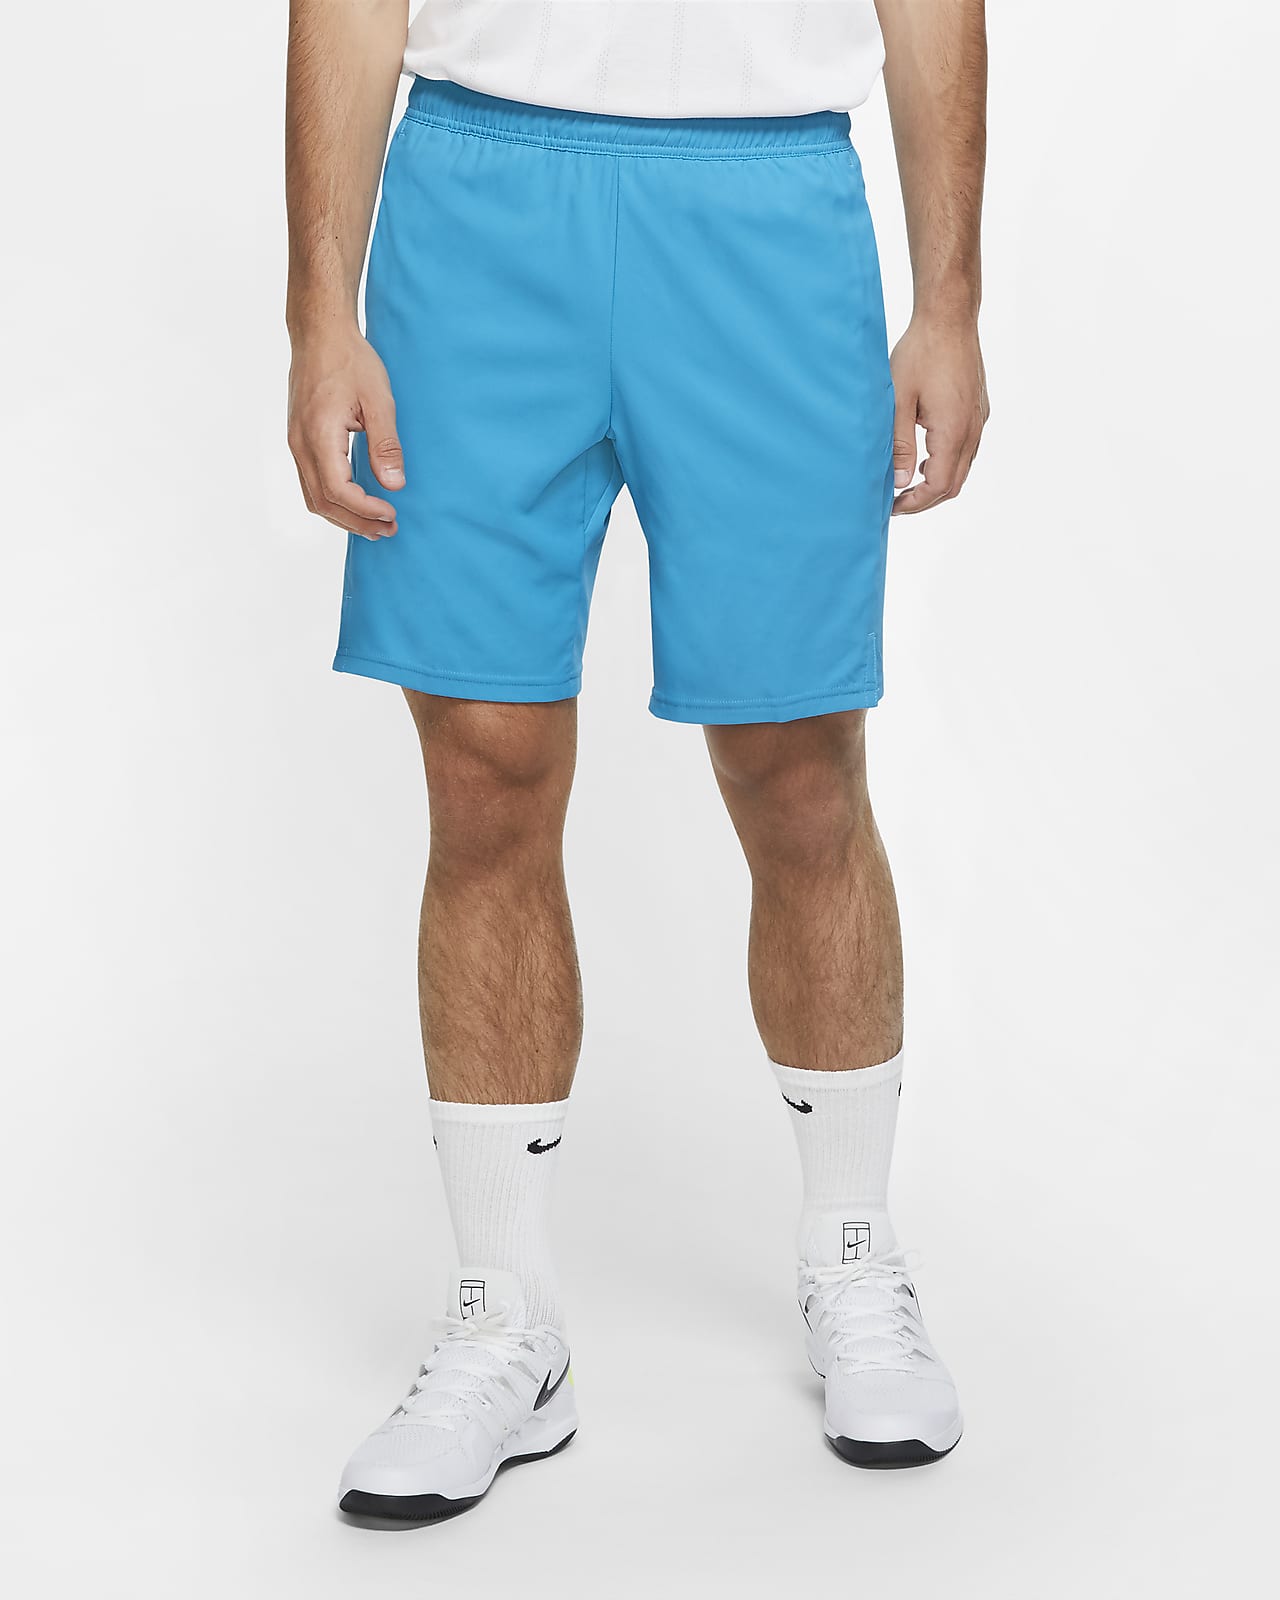 dri fit tennis shorts